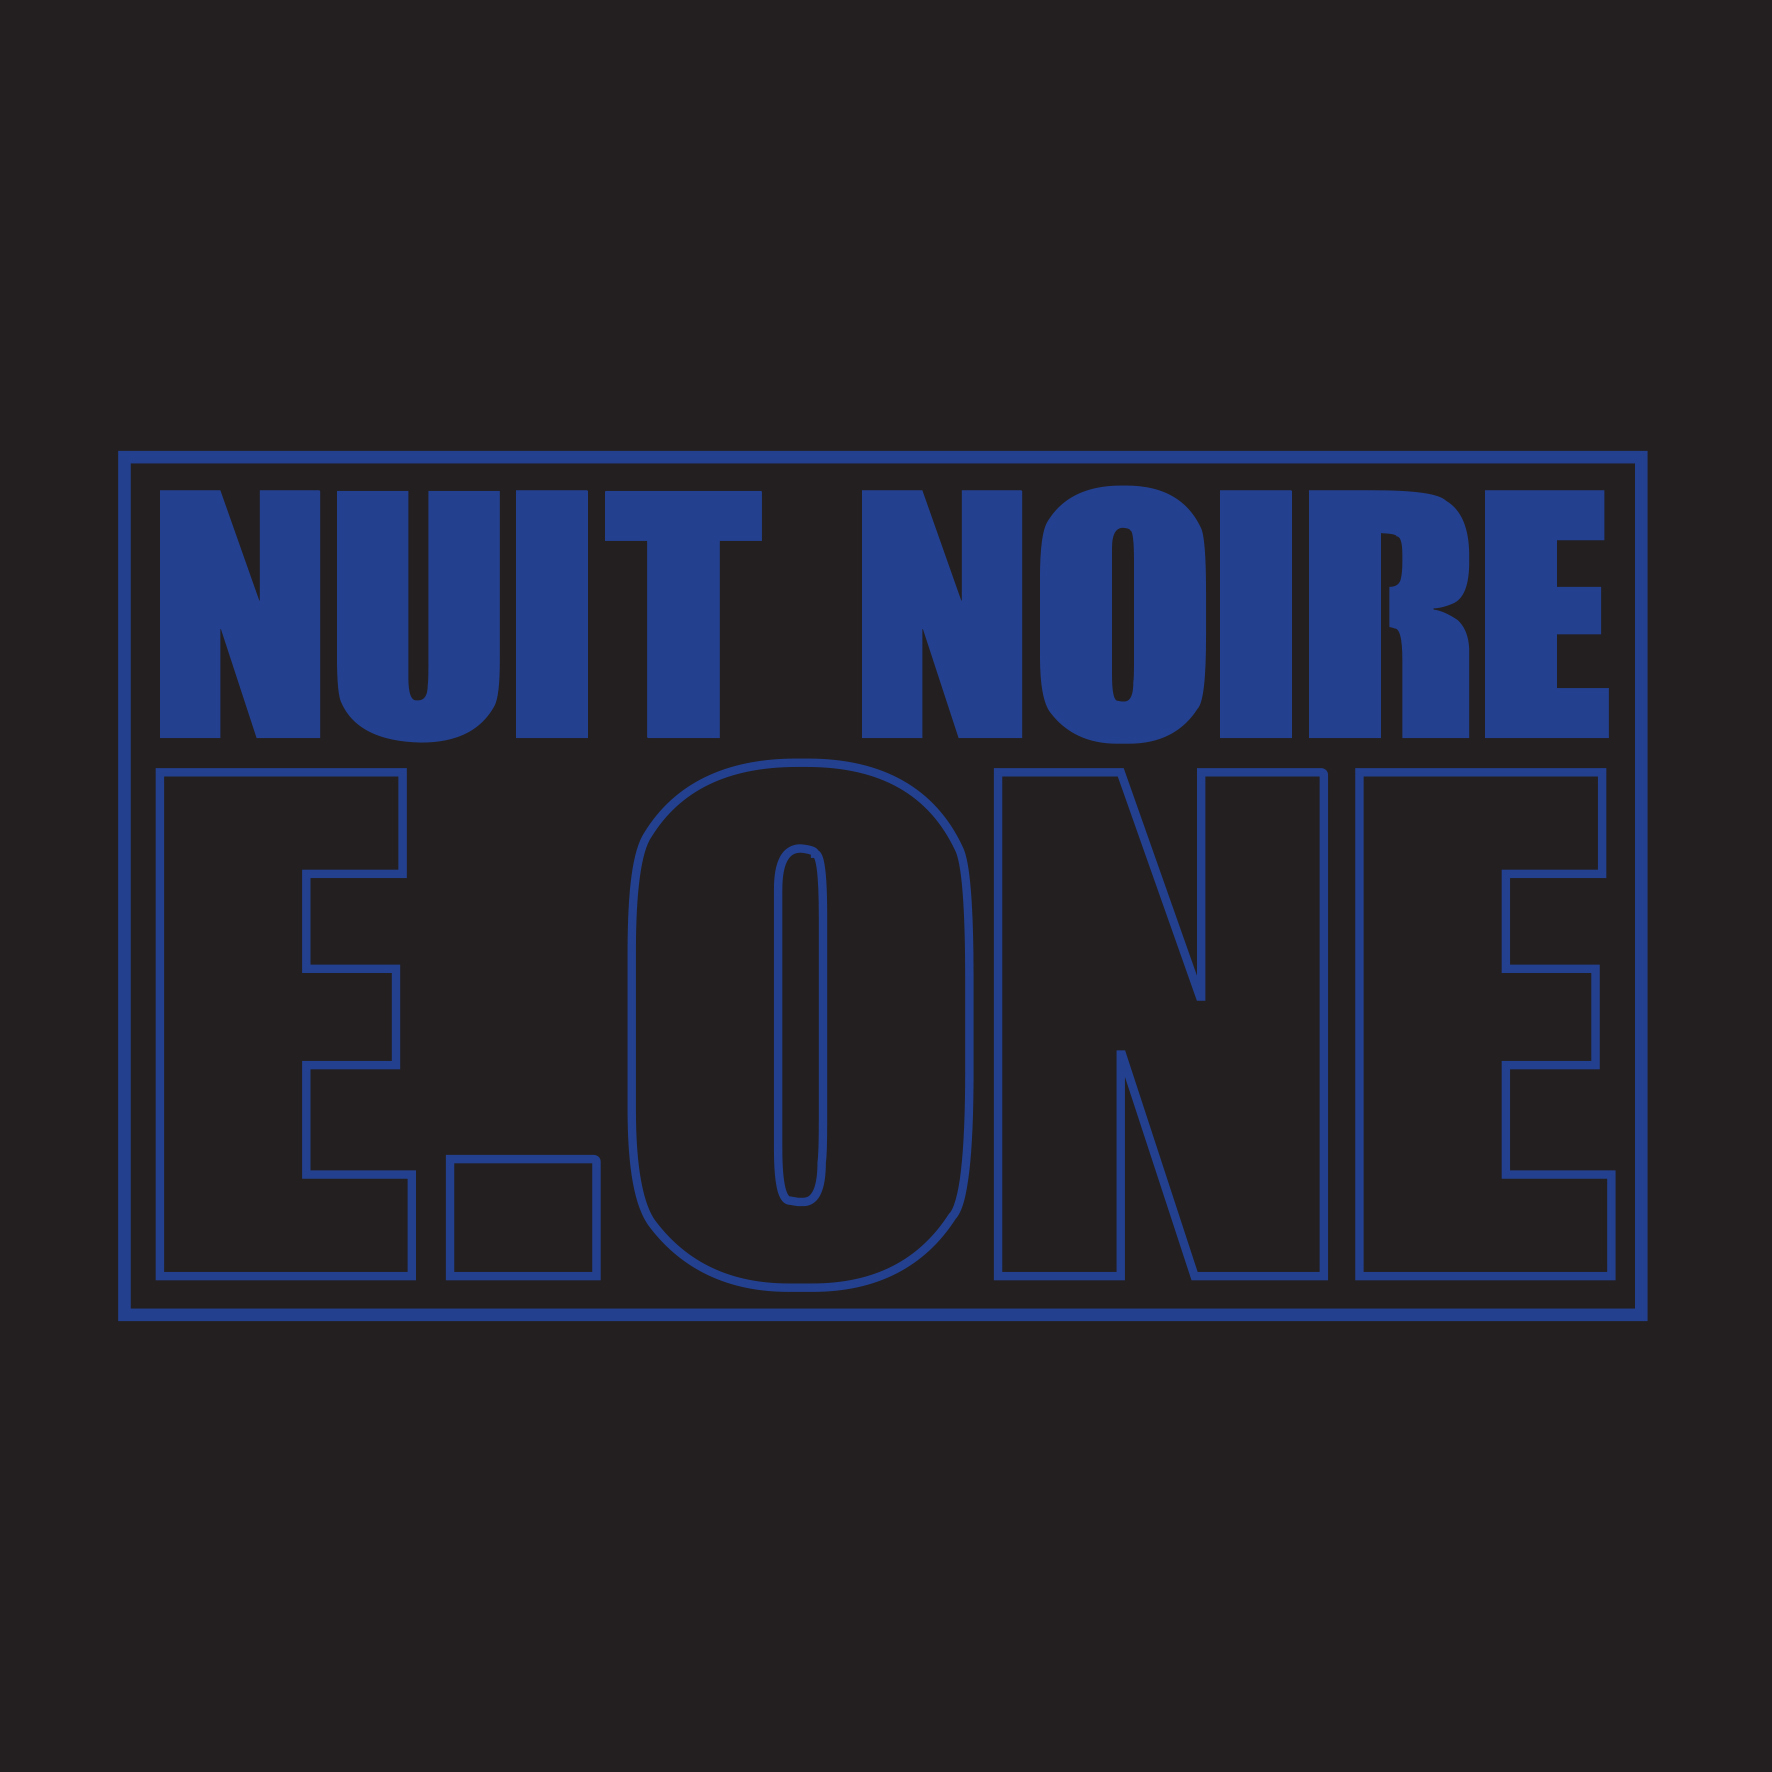 E.One (Première Ligne) "Nuit noire"